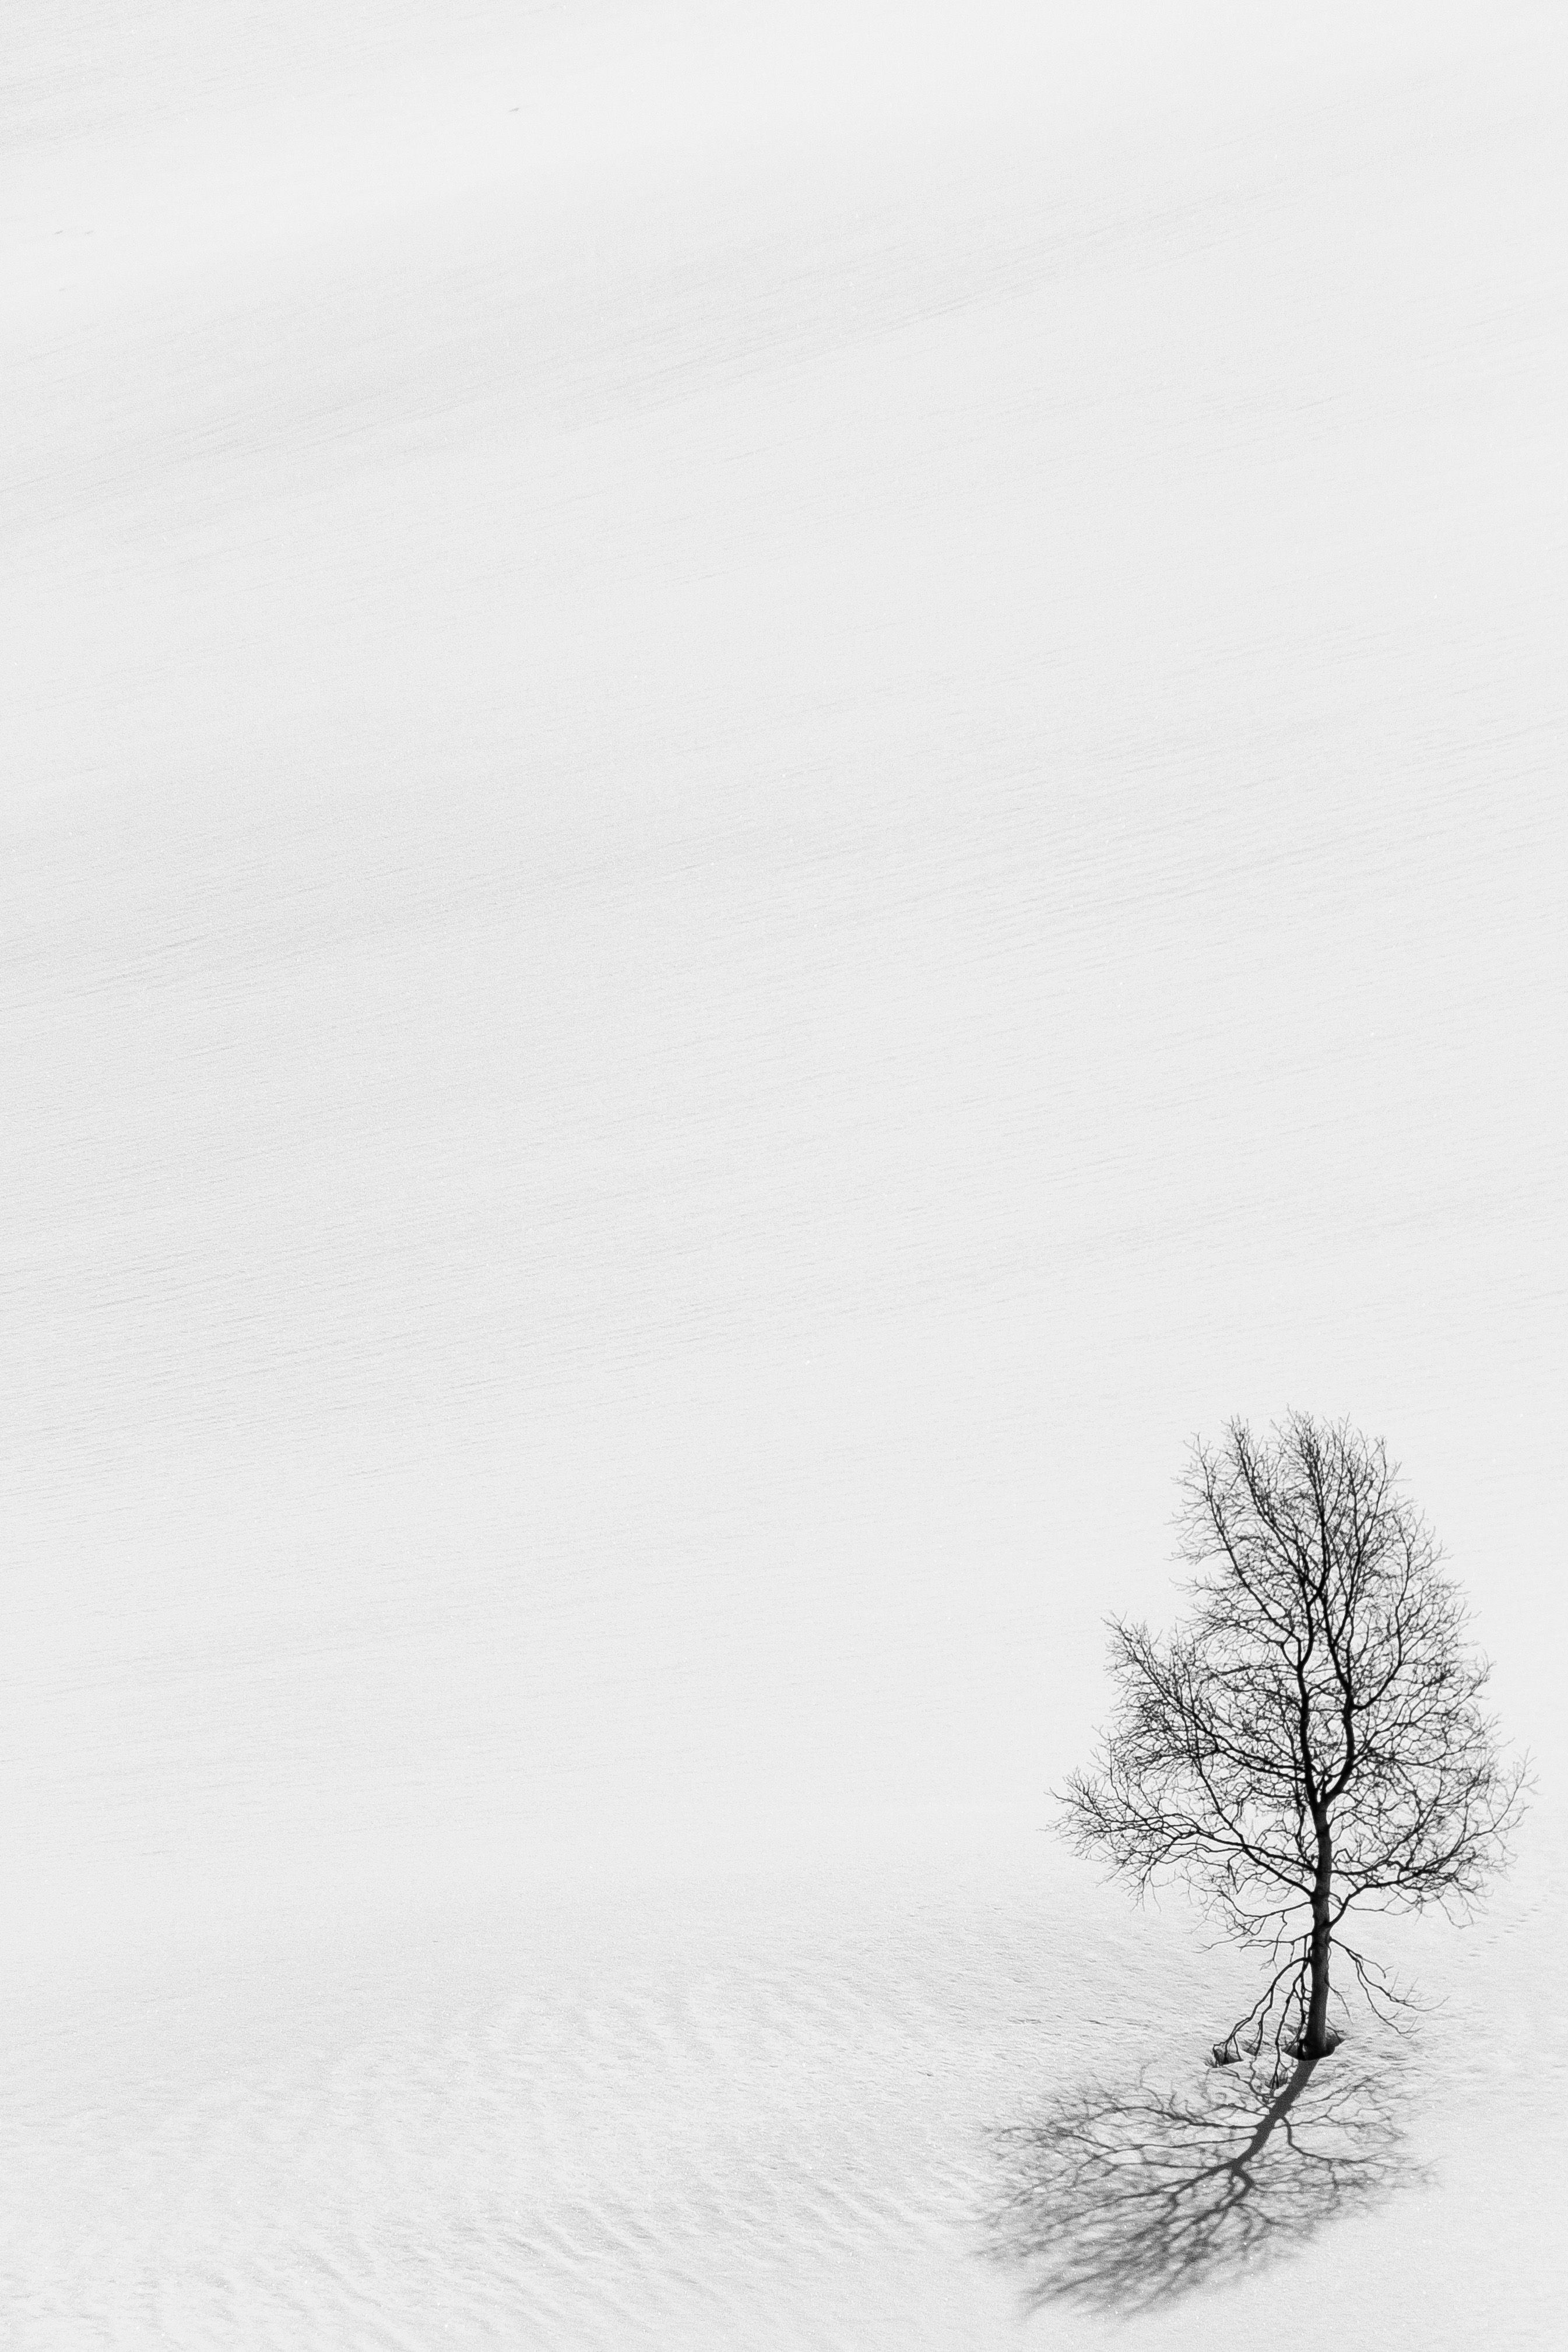 bw, snow, winter, nature, wood, tree, minimalism, chb HD wallpaper